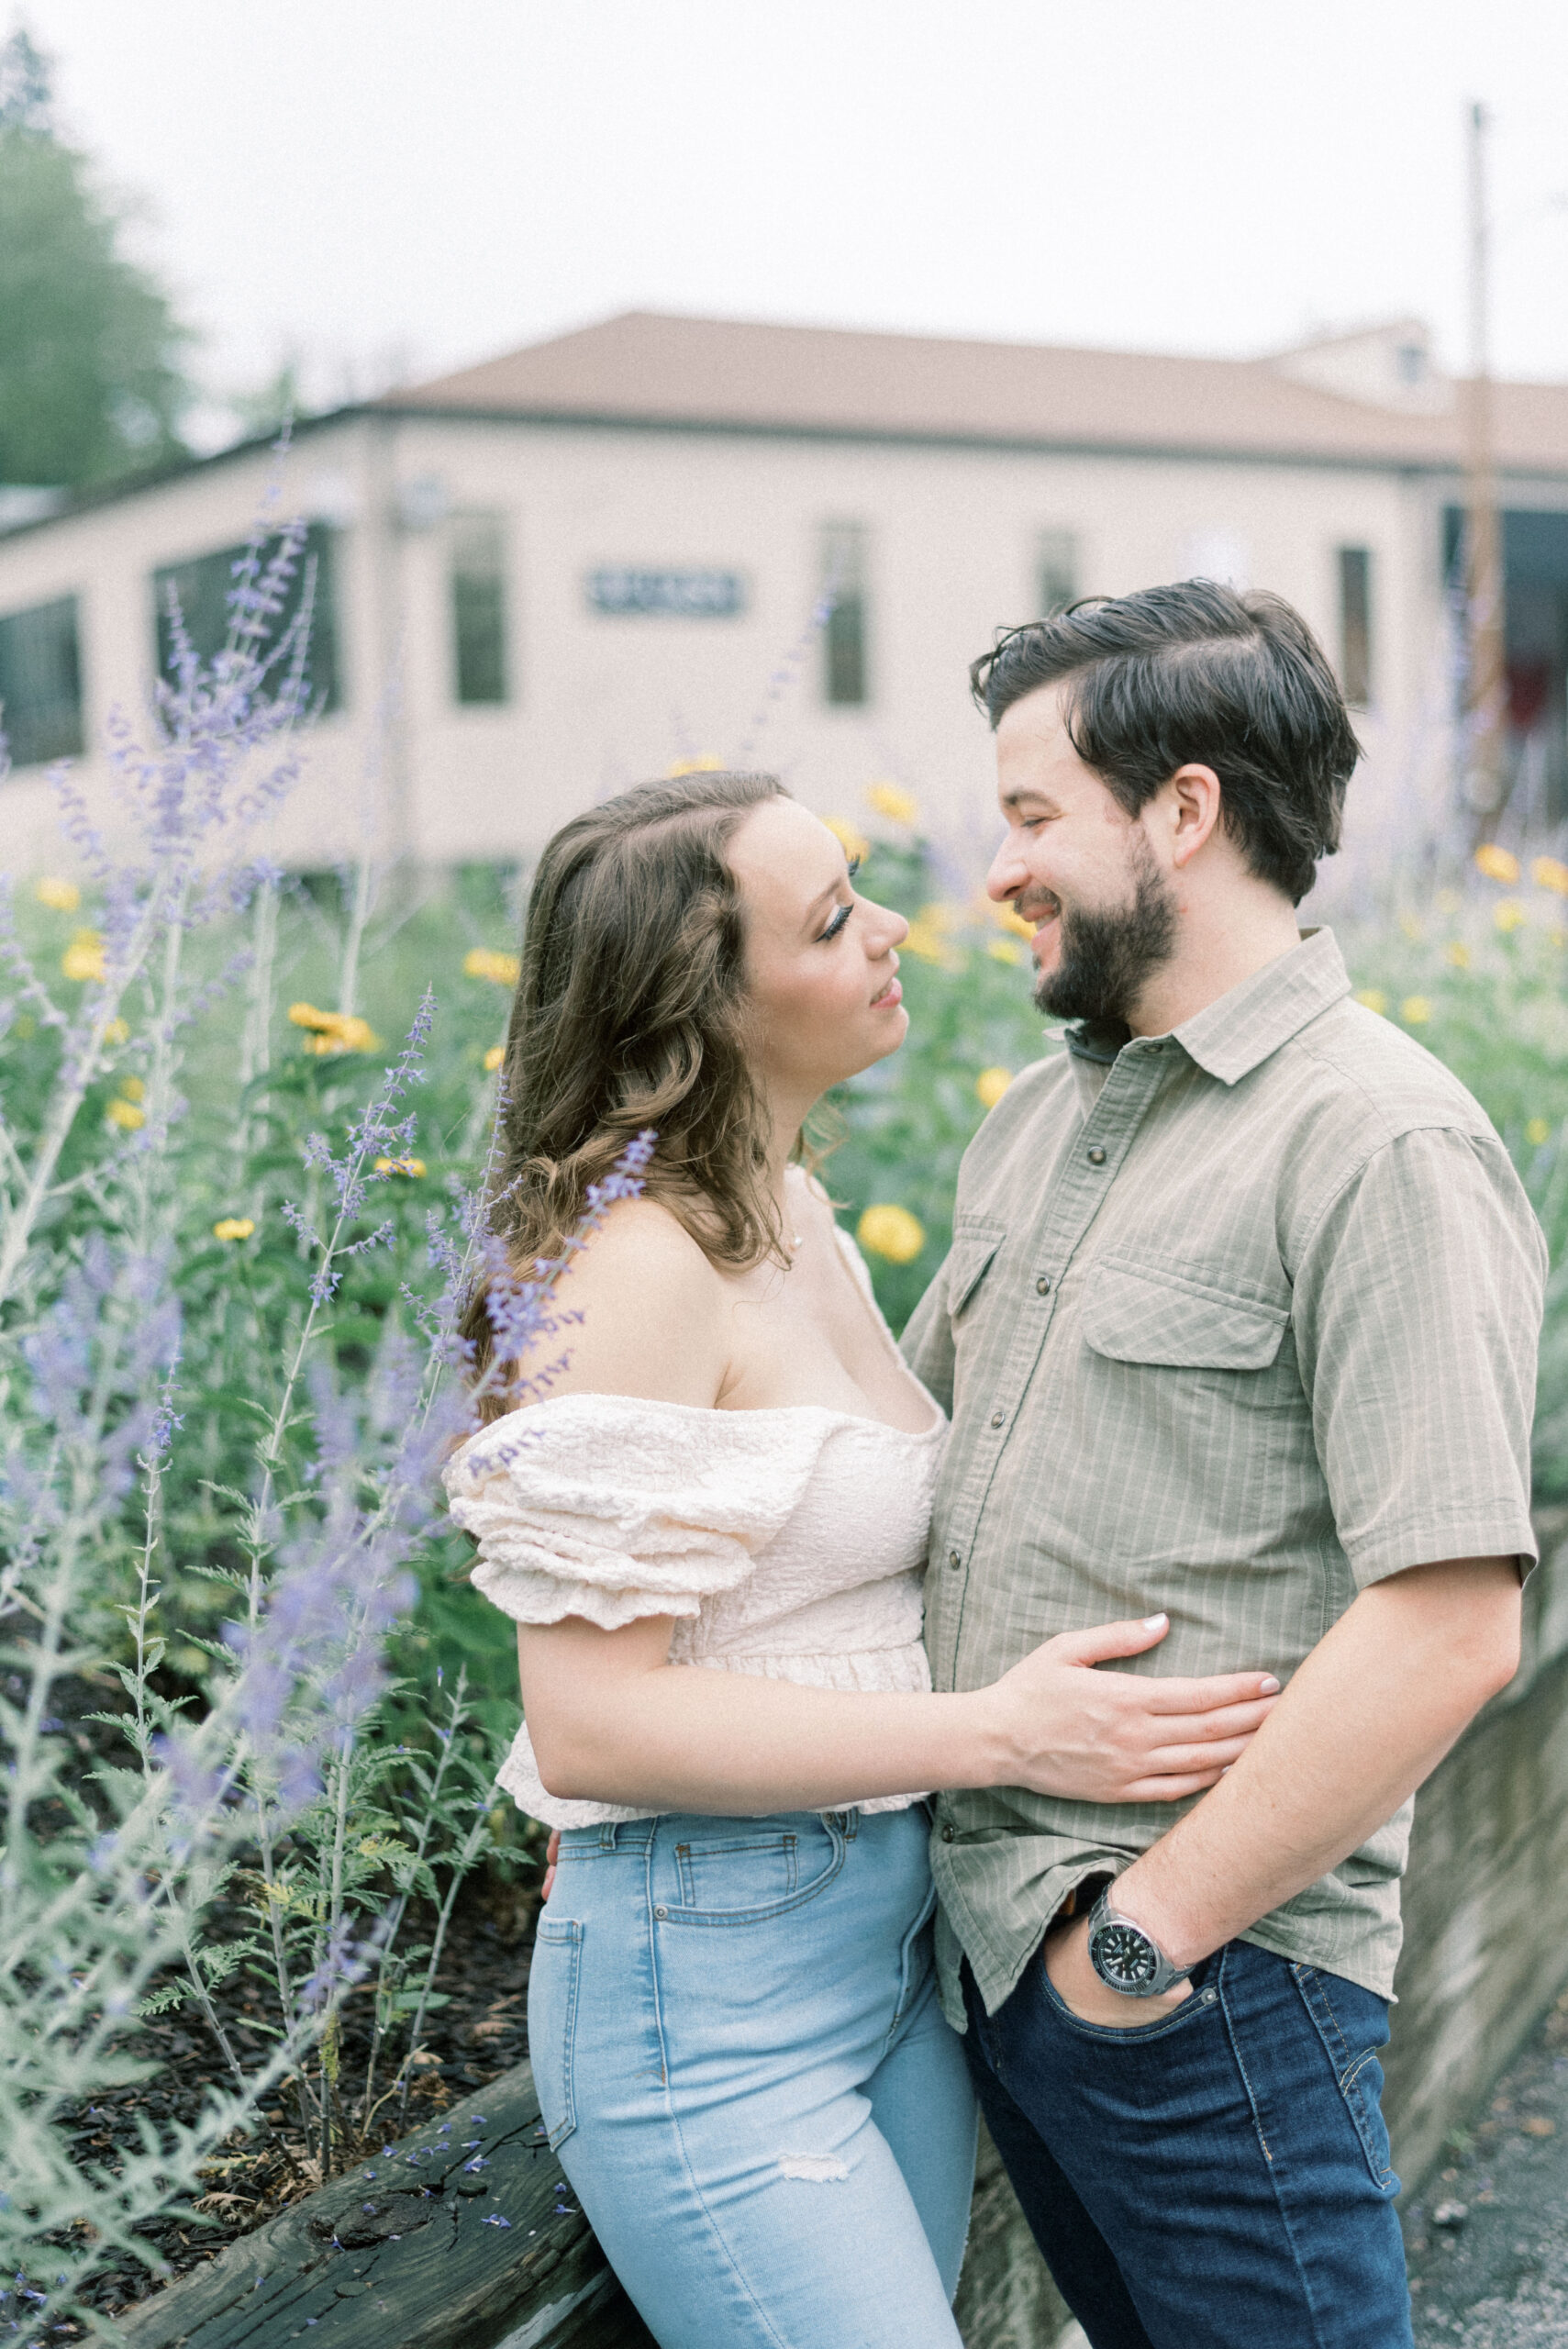 Maryland wedding photographer captures woman embracing man